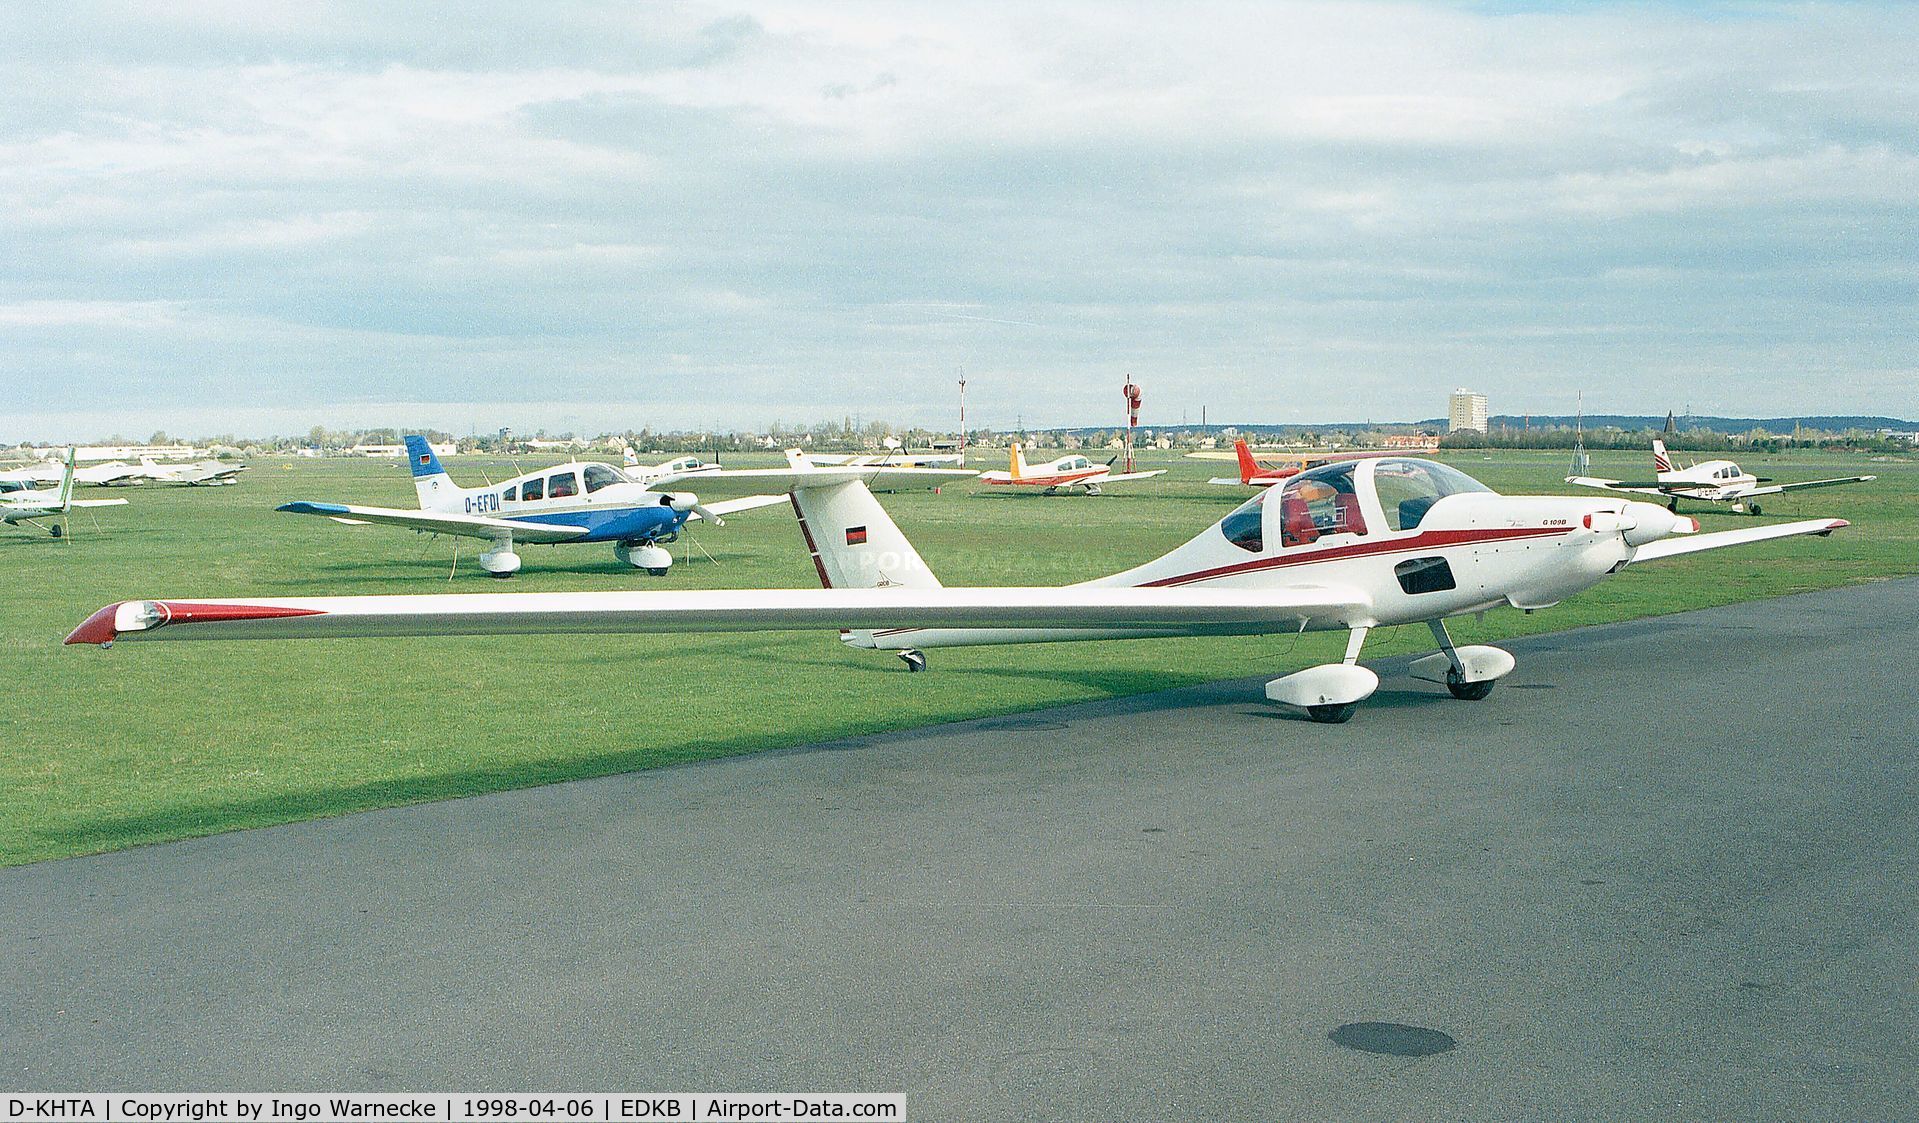 D-KHTA, Grob G-109B C/N 6501, Grob G.109B at Bonn-Hangelar airfield